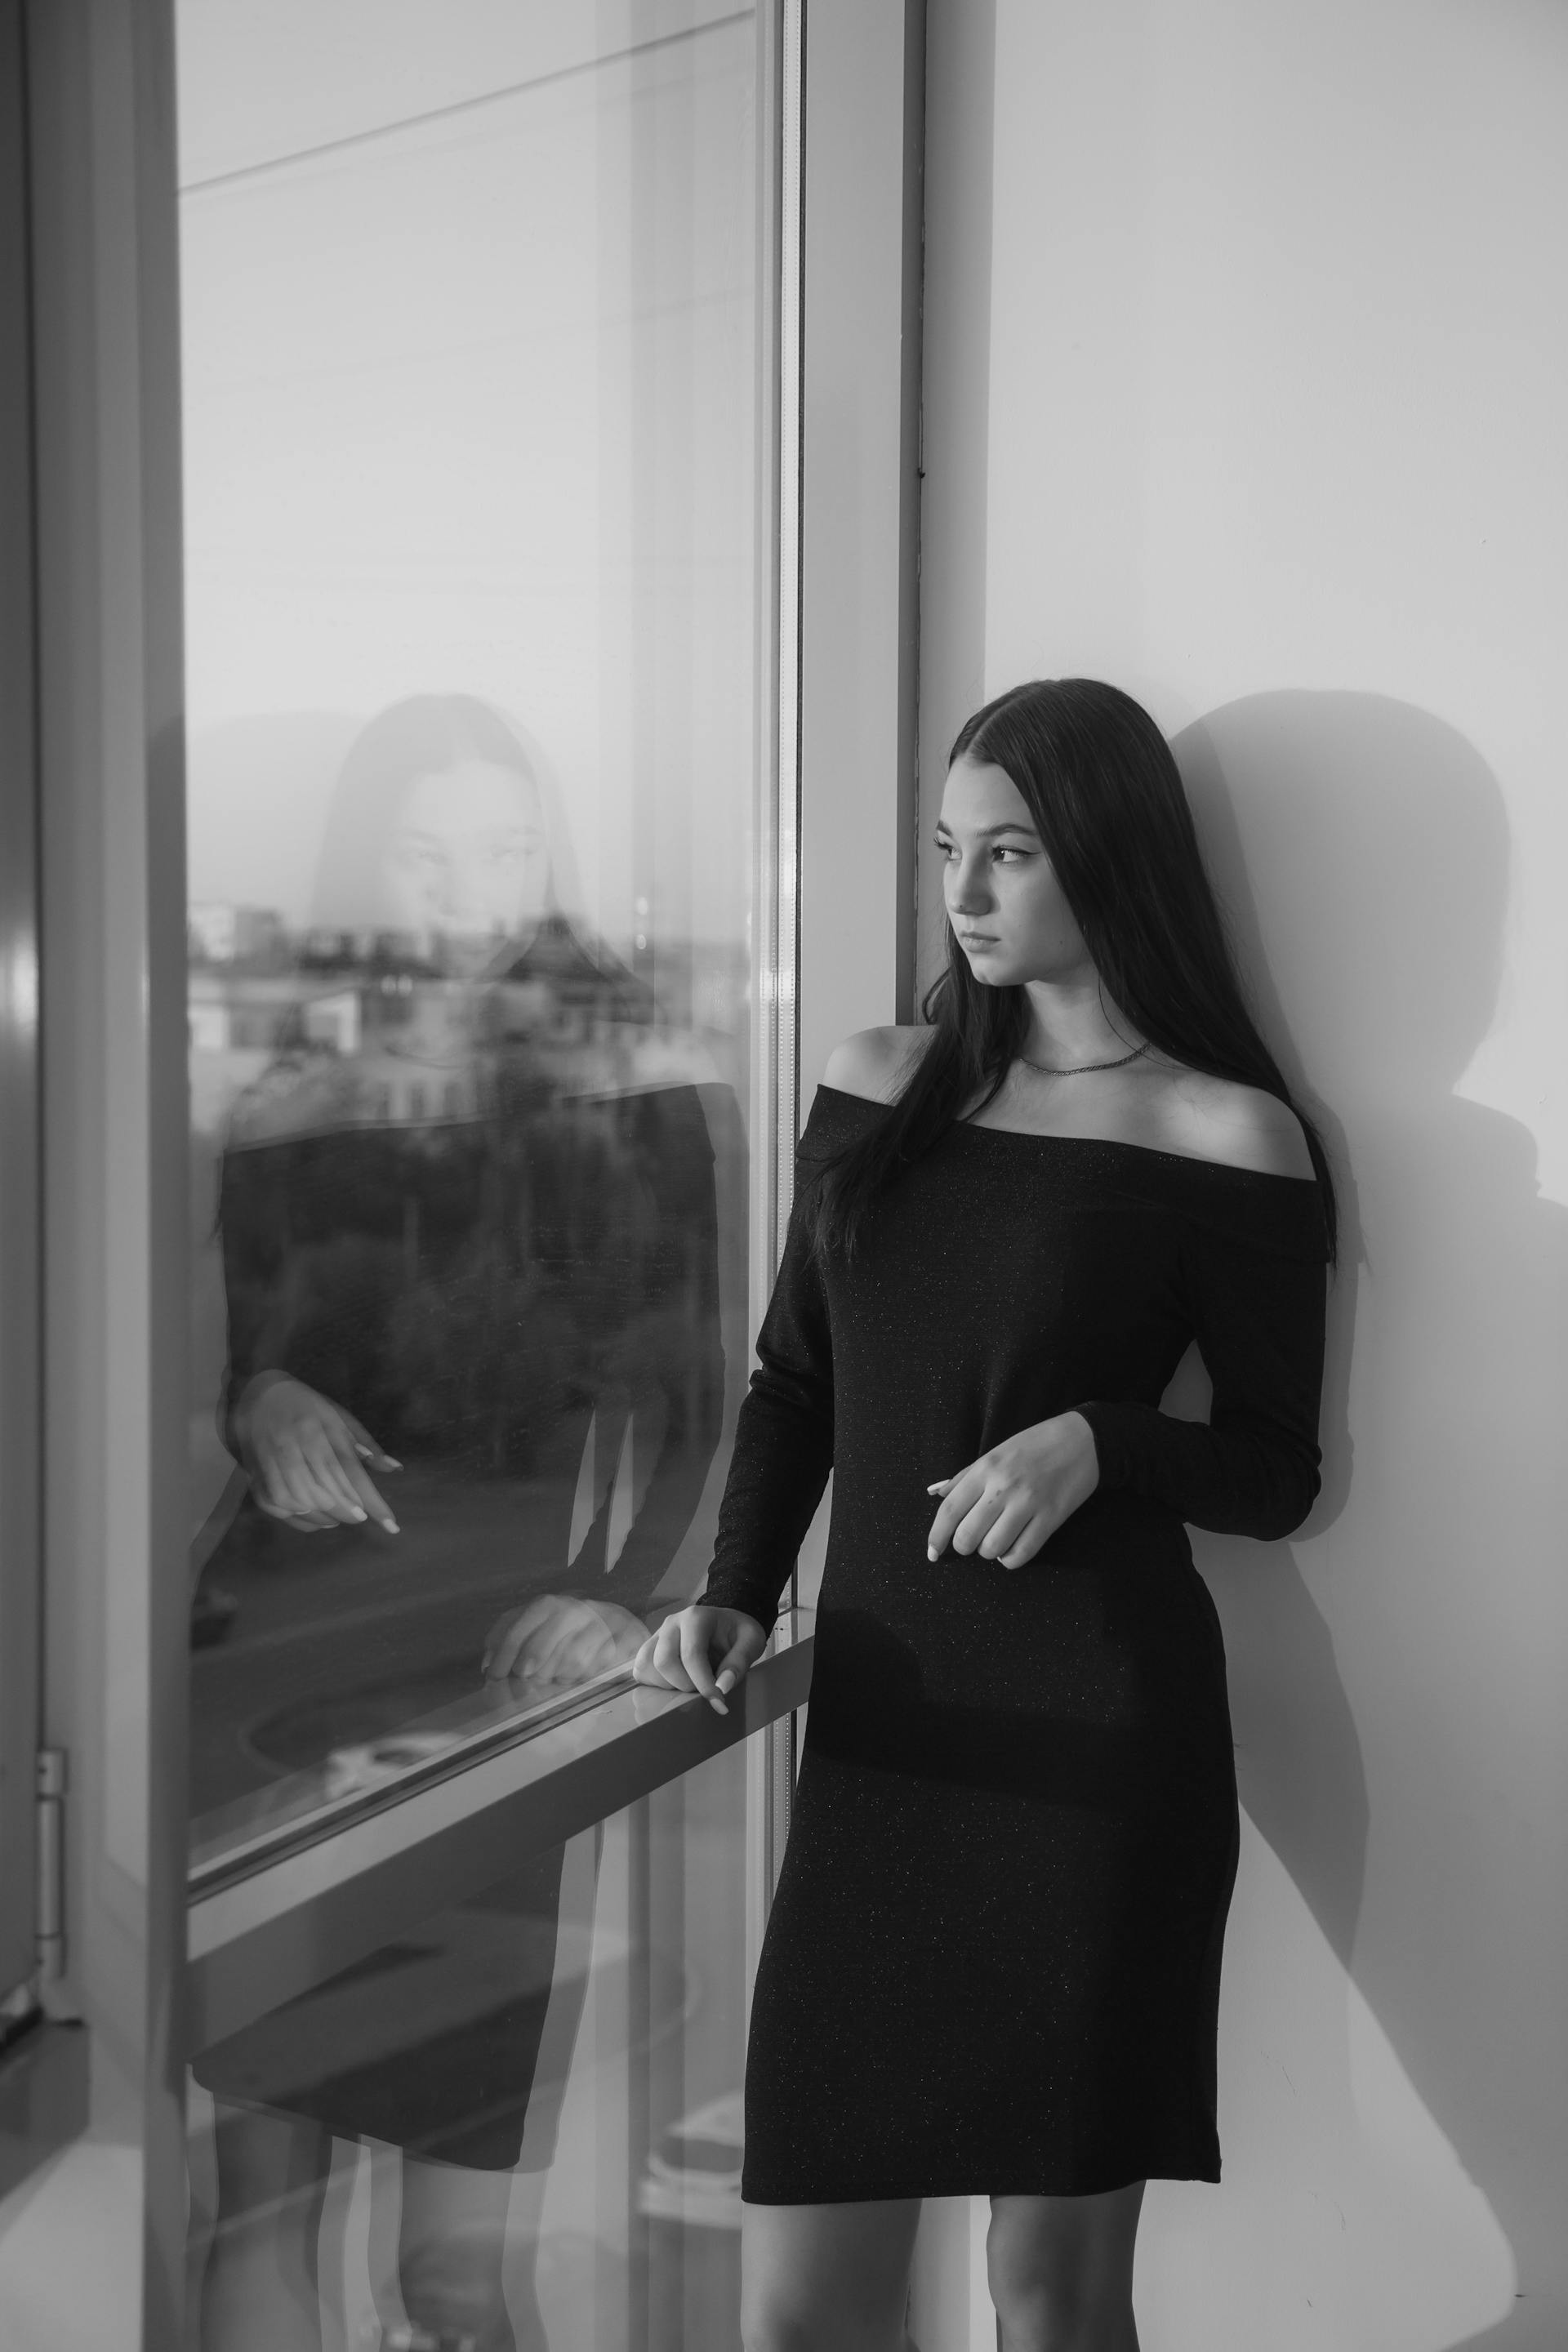 Una mujer junto a una ventana | Fuente: Pexels